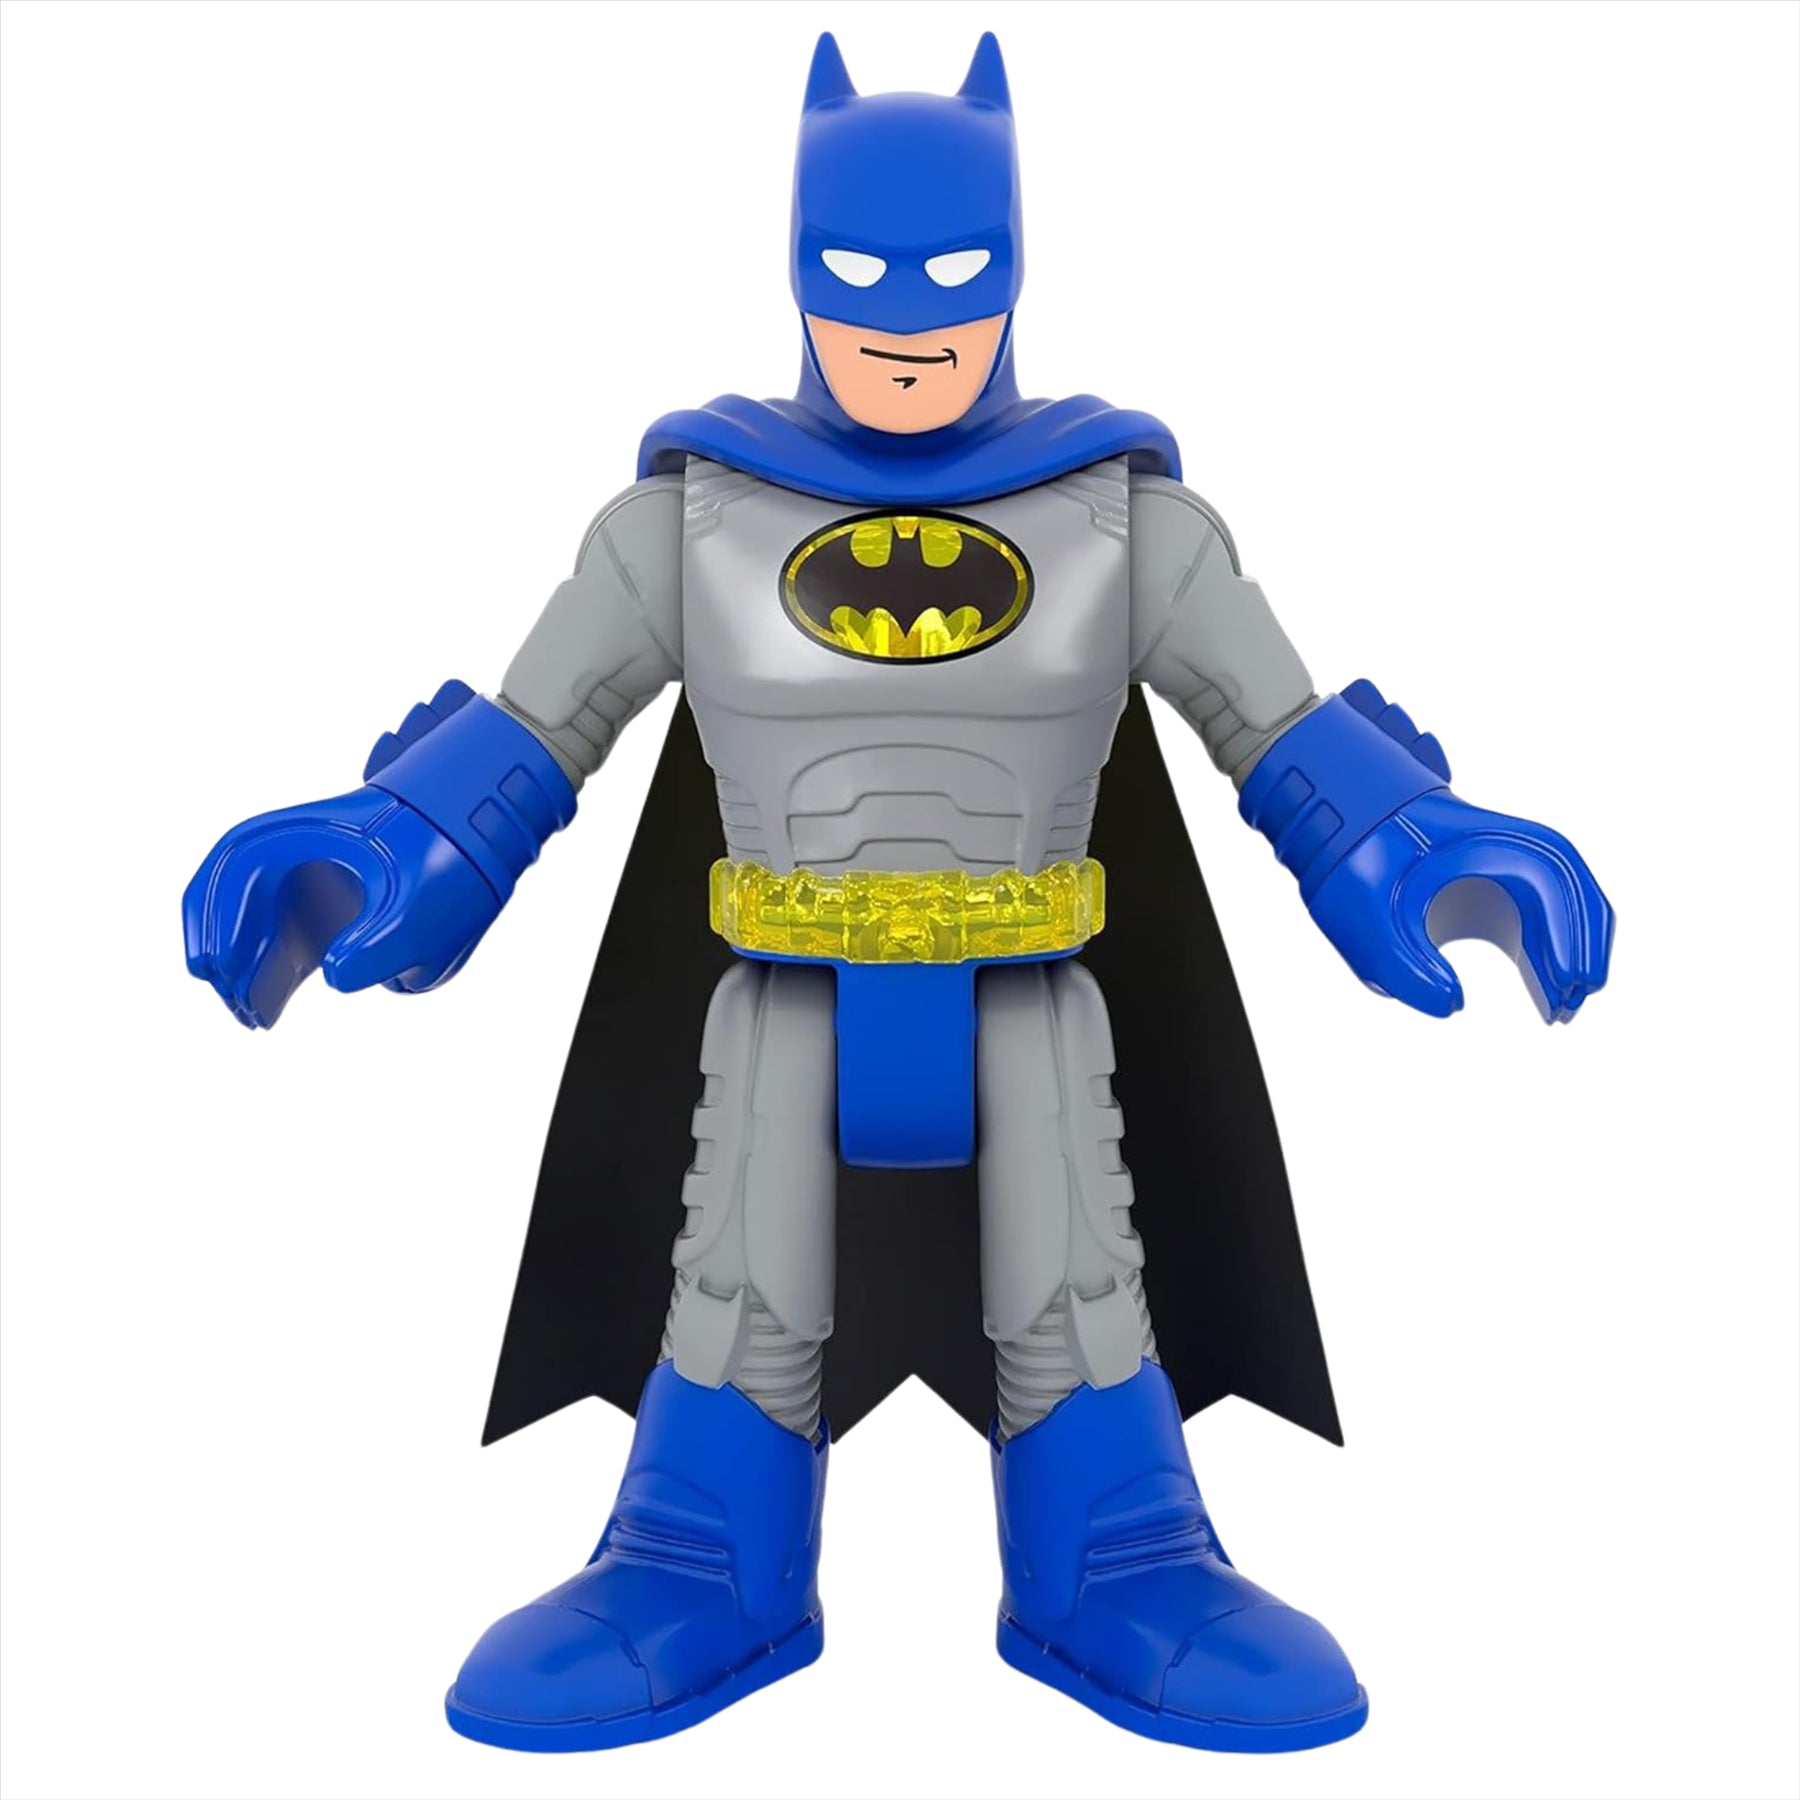 Imaginext DC Super Friends Batman Miniature Action Figure Play Toy